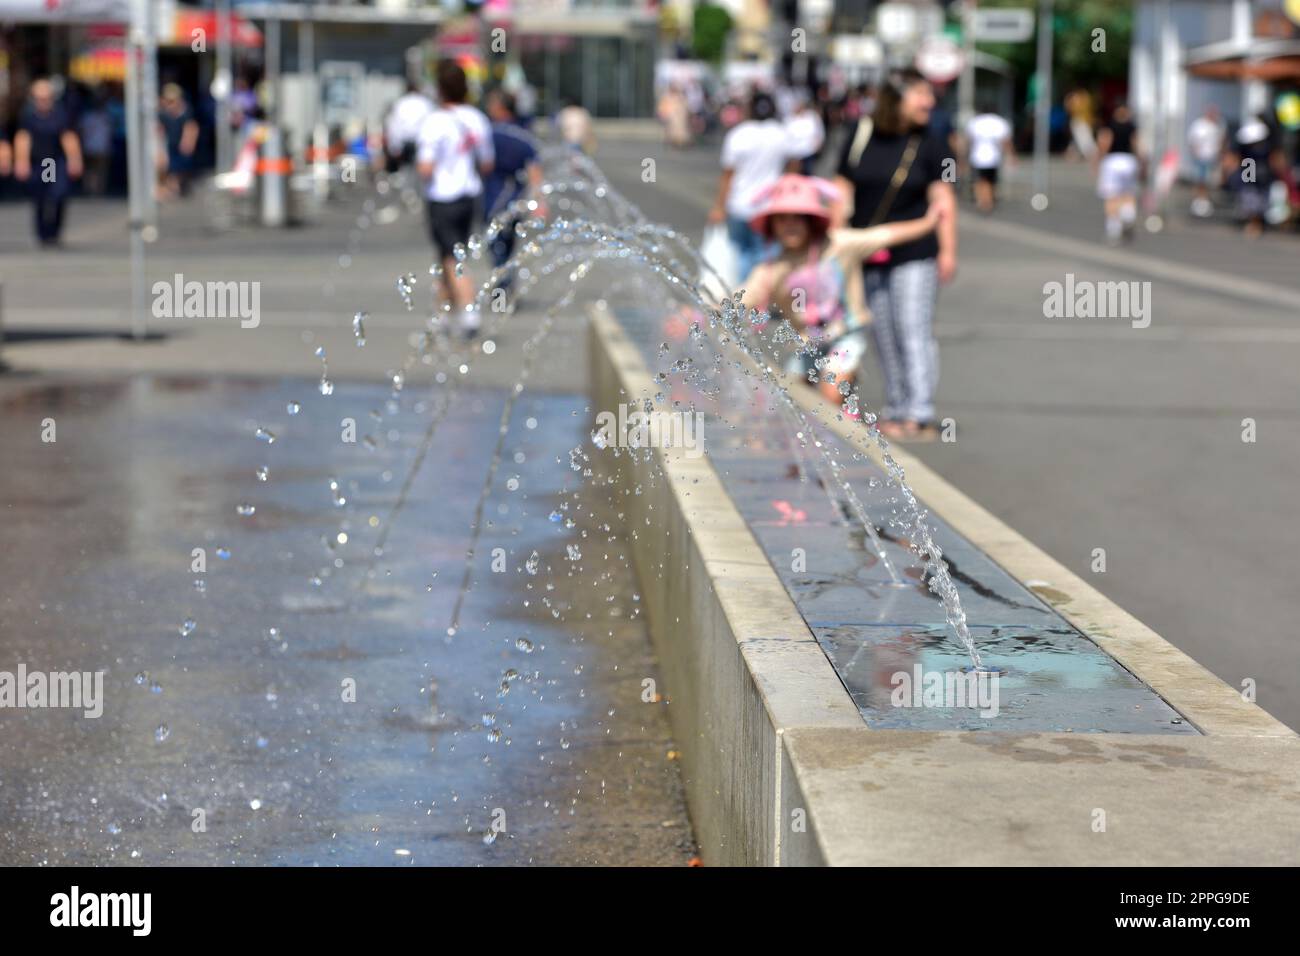 Ein MÃ¤dchen kÃ¼hlt sich an einem Wasserspiel in Wien (Bezirk Favoriten) ab - A girl cools off at a water feature in Vienna (Favoriten district) Stock Photo